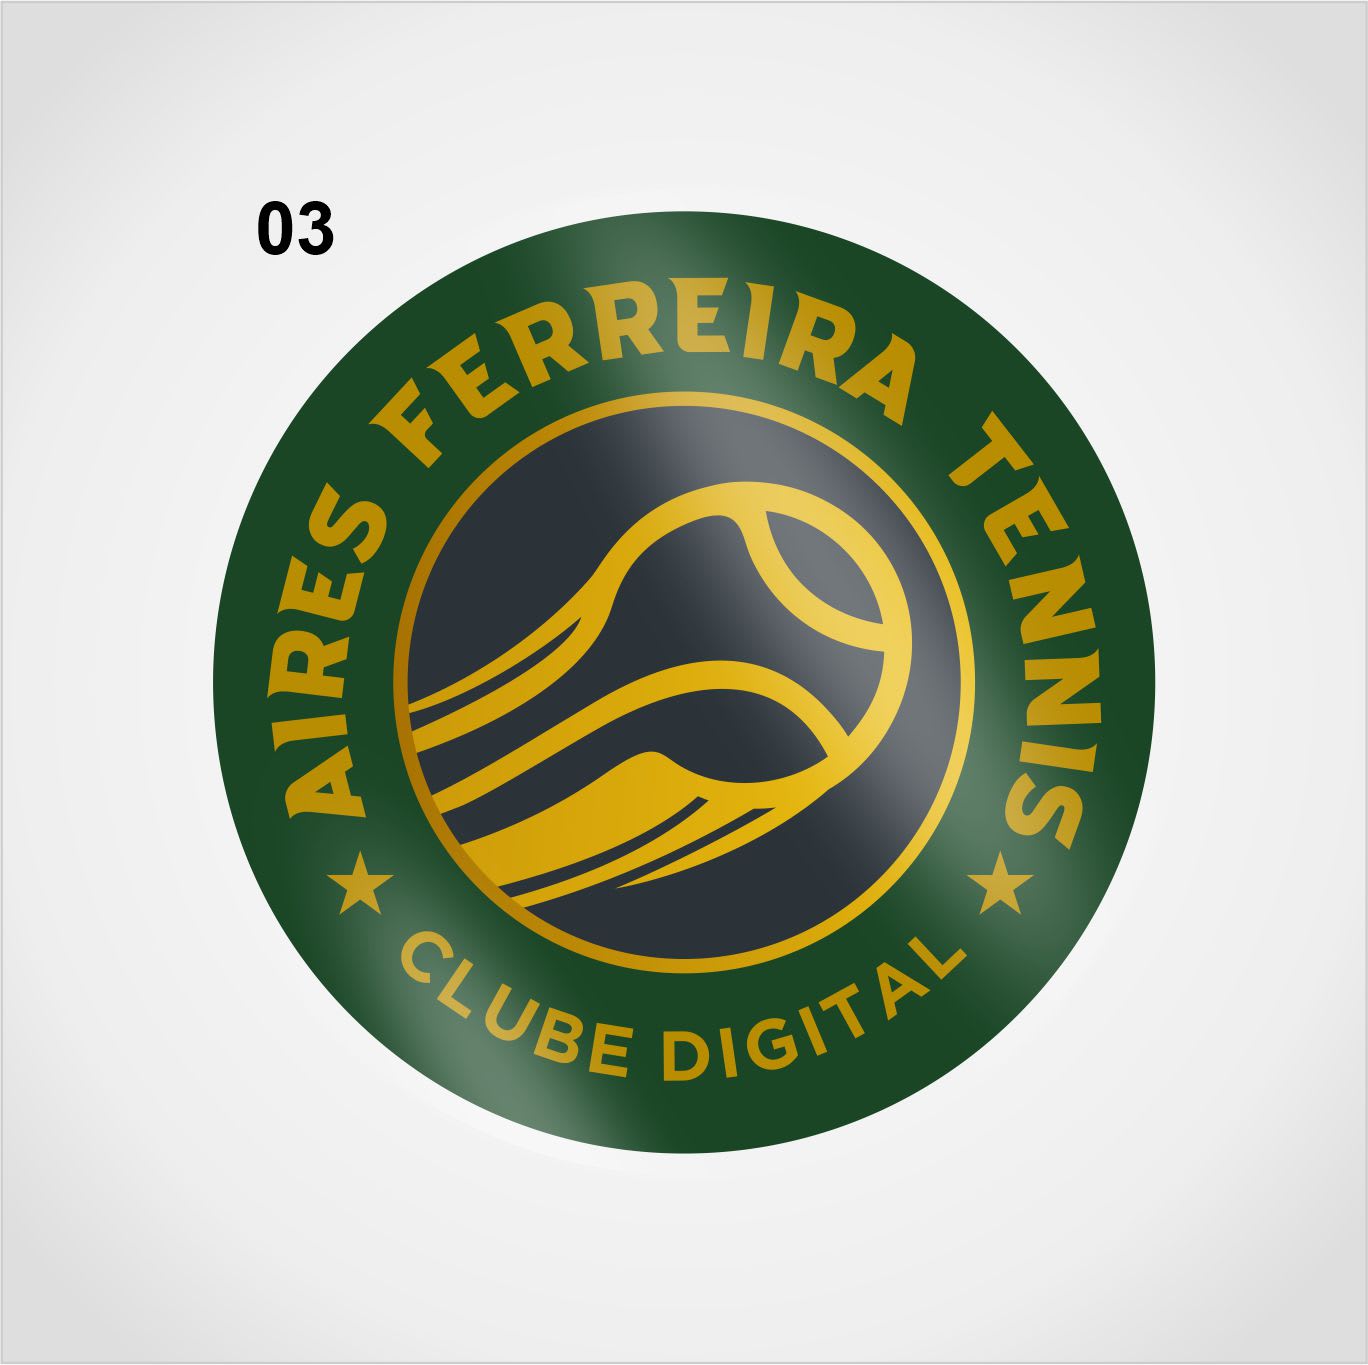 Clube Digital Aires Ferreira Tennis